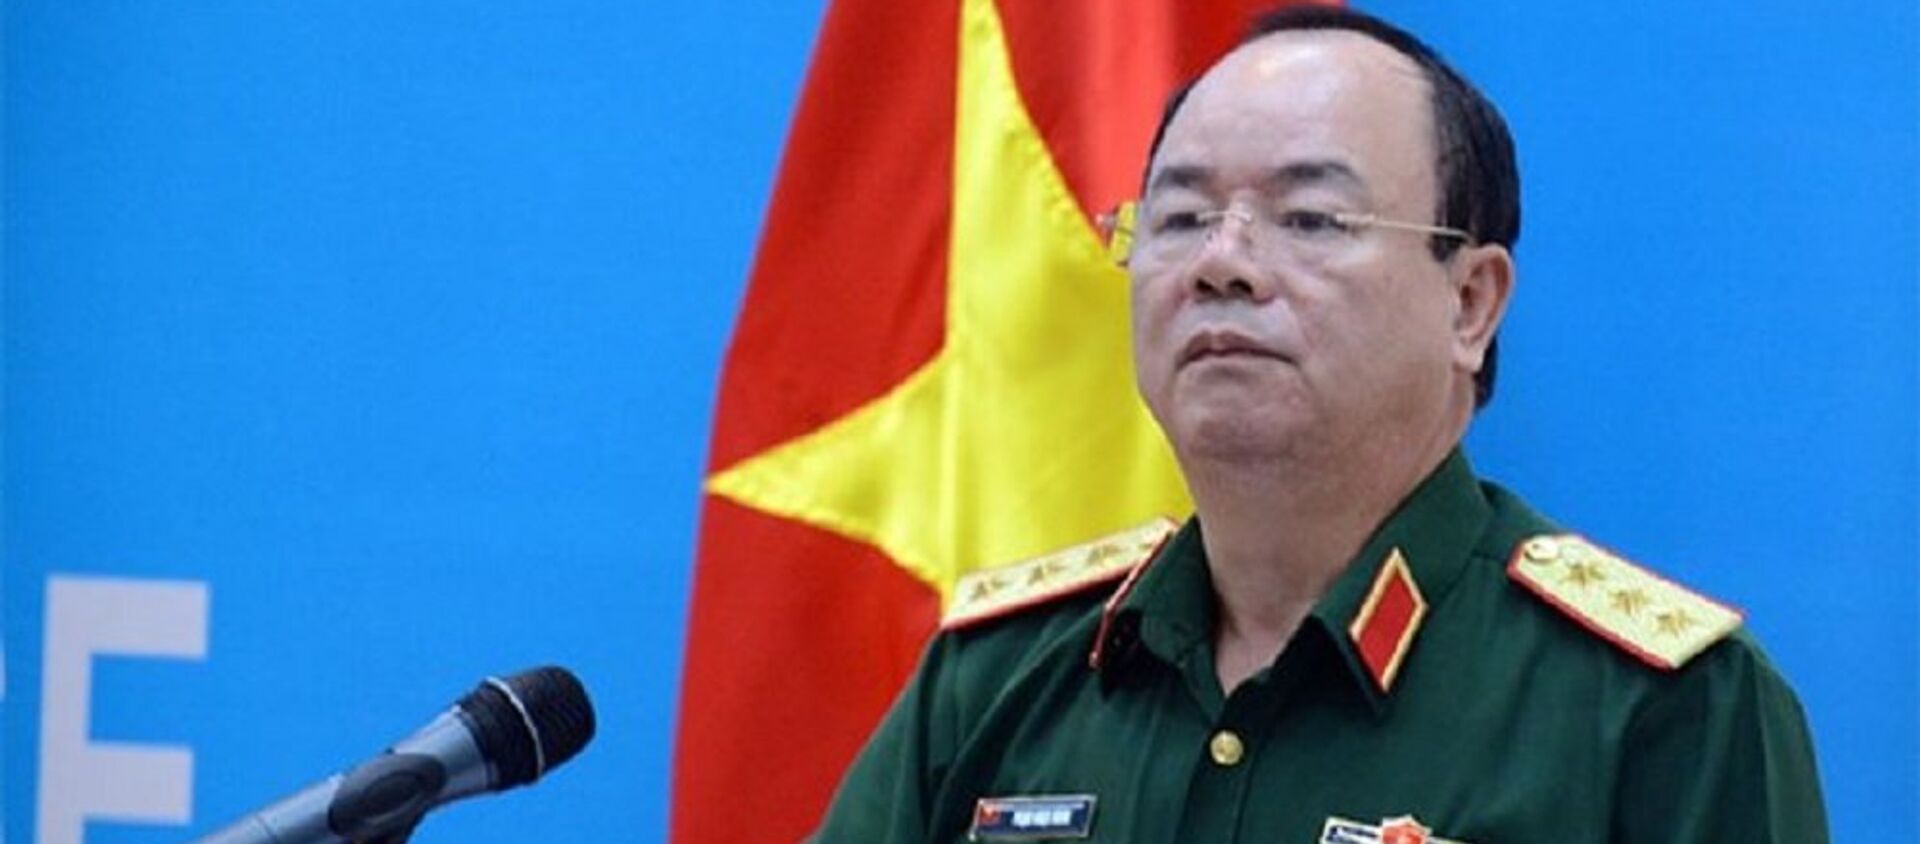 Thượng tướng Phạm Ngọc Minh phát biểu tại lễ khai mạc. - Sputnik Việt Nam, 1920, 05.06.2018